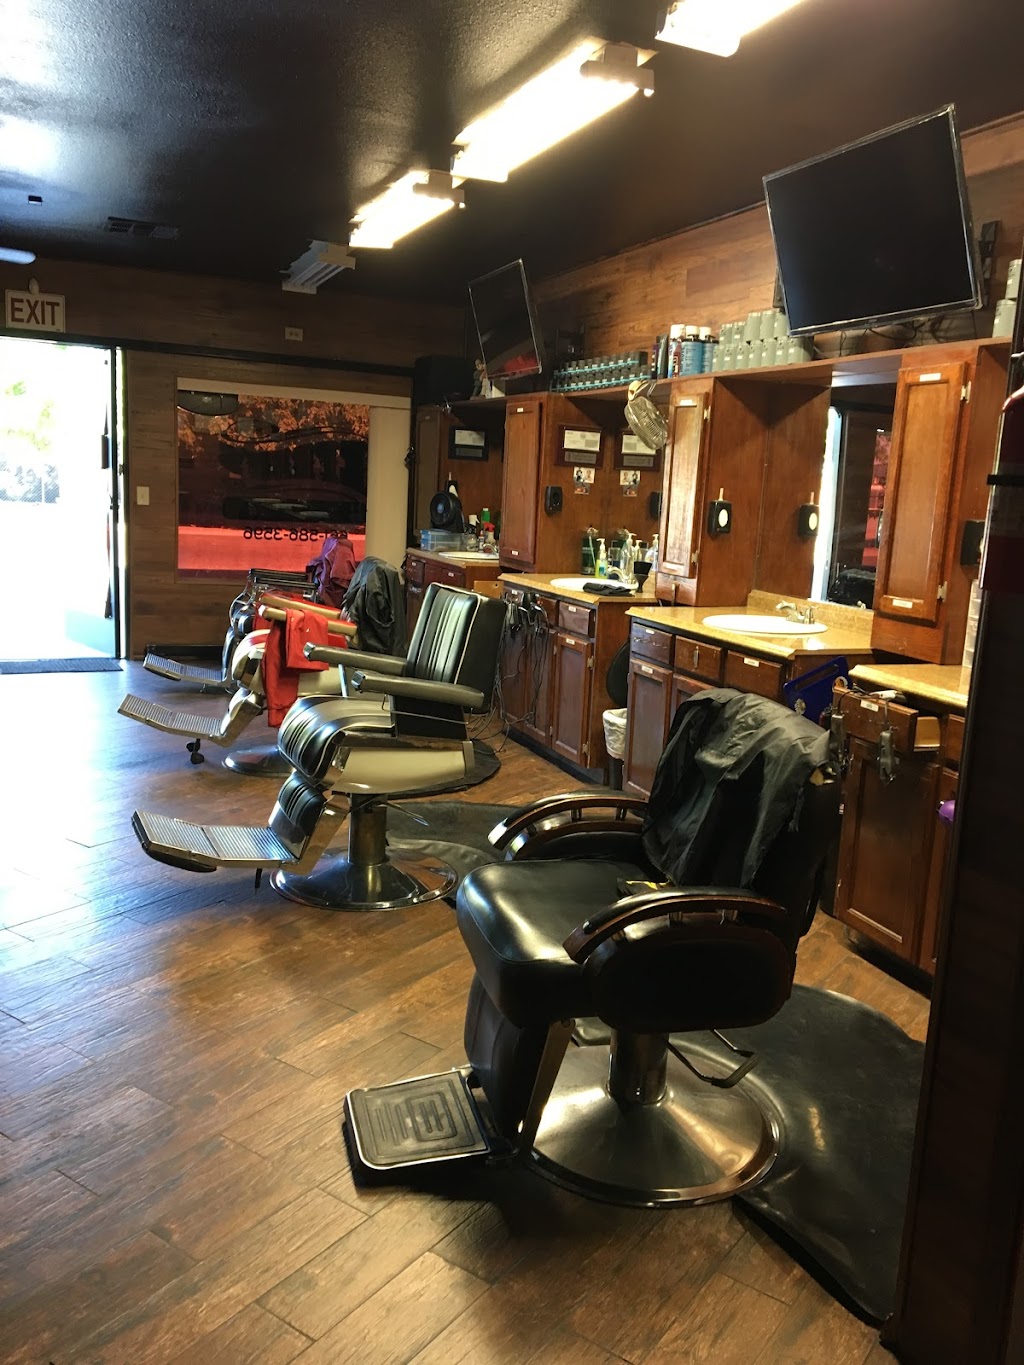 Efrens Barber Shop | 168 N Front St, Earlimart, CA 93219, USA | Phone: (661) 586-3596